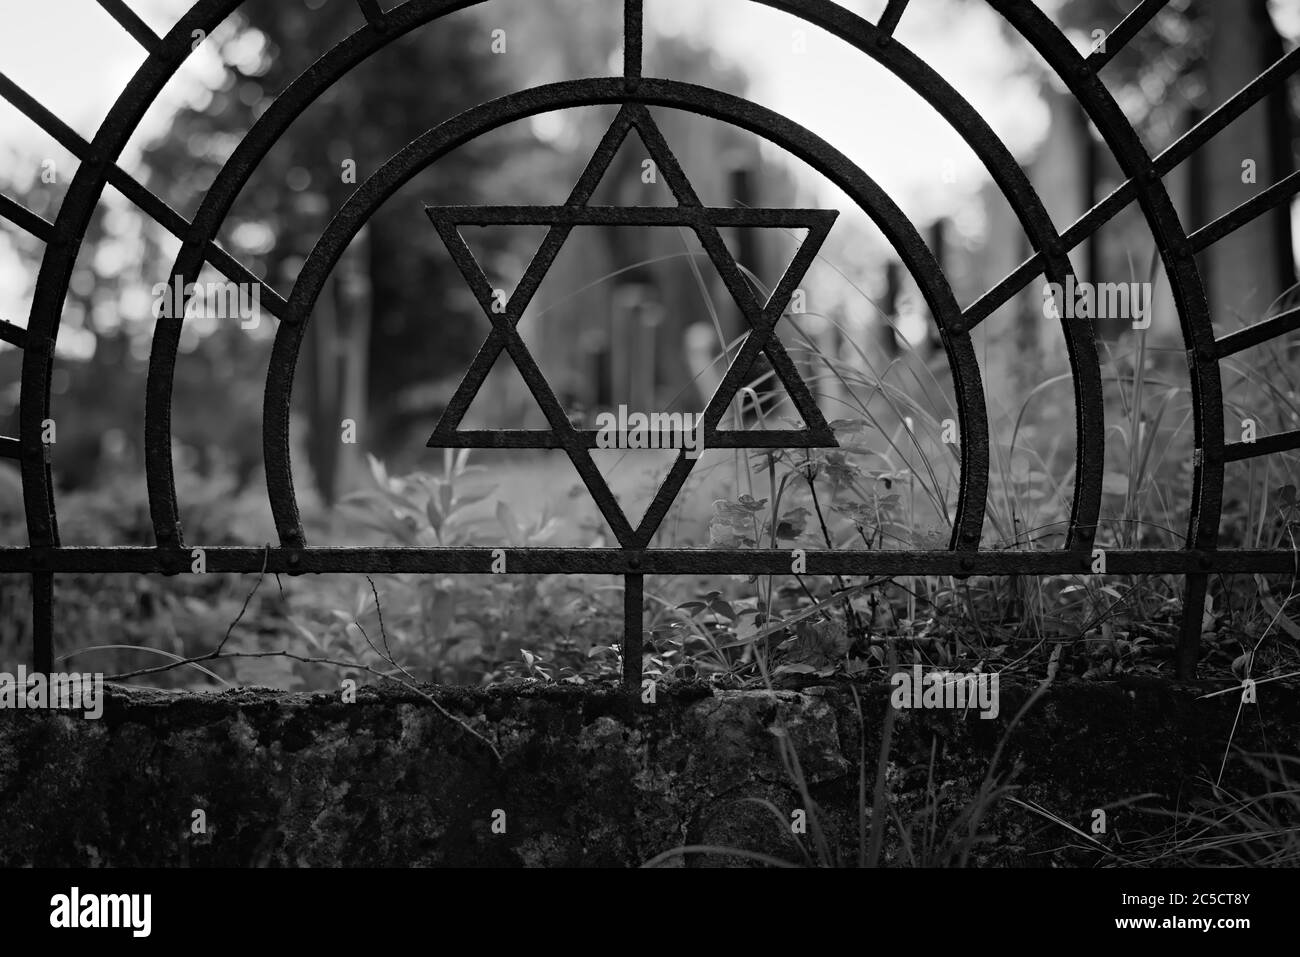 Cimetière juif herbeux hors foyer, pris à travers Star of David à l'intérieur d'arcs qui fait partie de la haie d'acier autour d'elle. Banque D'Images